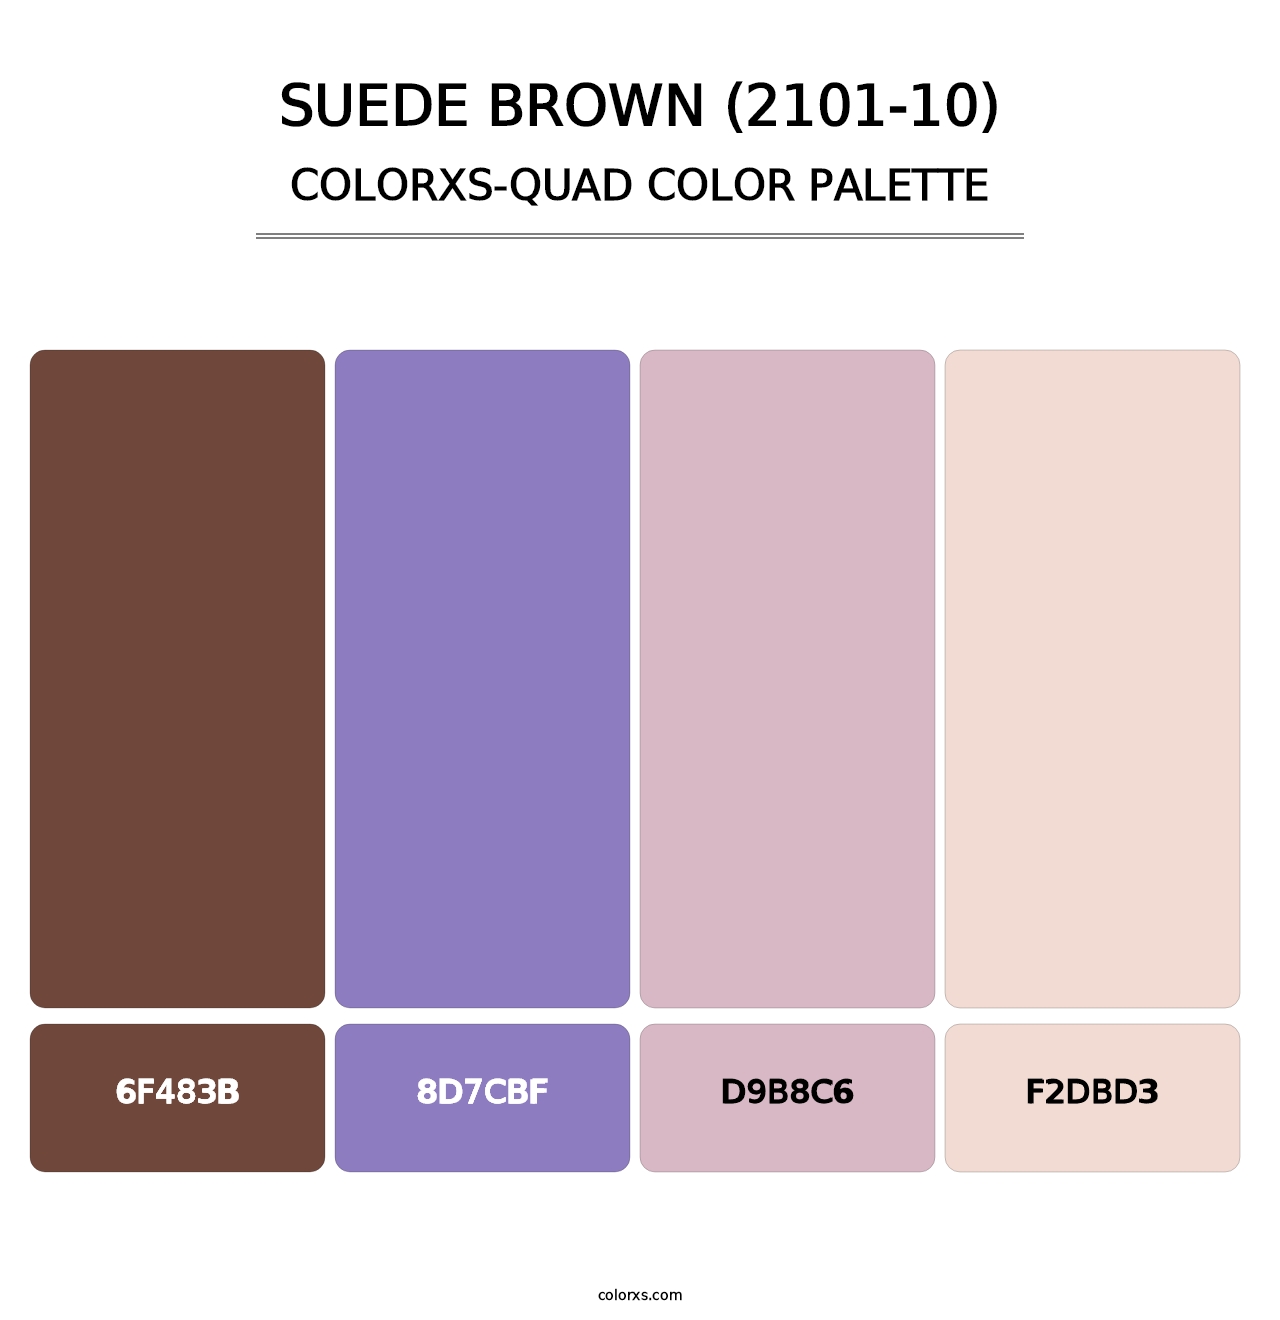 Suede Brown (2101-10) - Colorxs Quad Palette